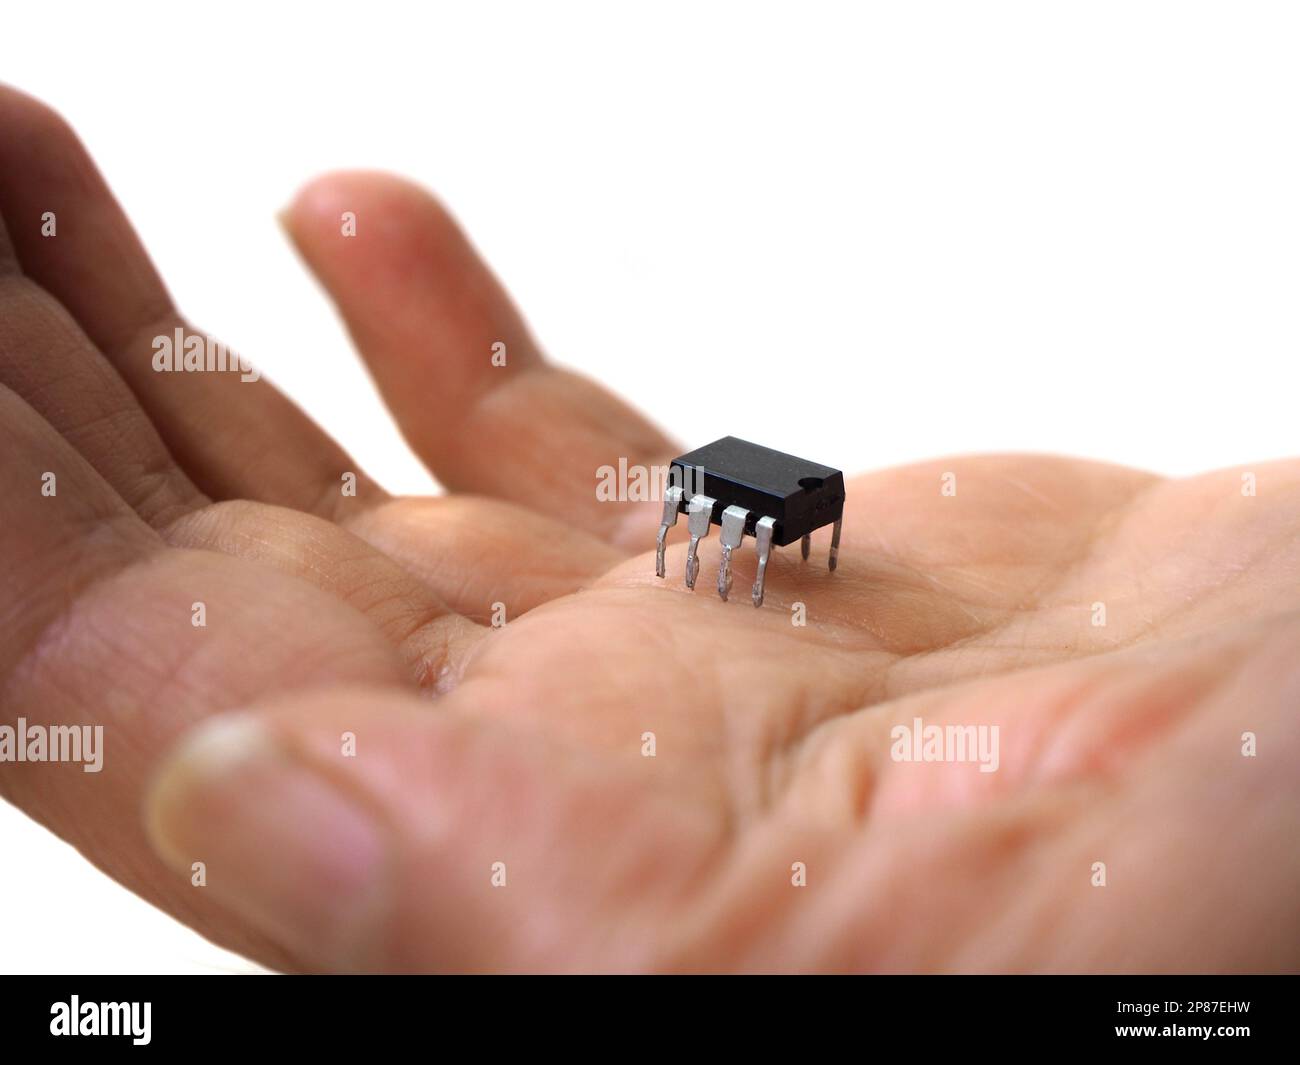 Eine Hand mit einem 8-Pin-Chip. Isoliertes elektronisches Bauteil, integrierter Schaltkreis. Halbleitertechnologie. Stockfoto